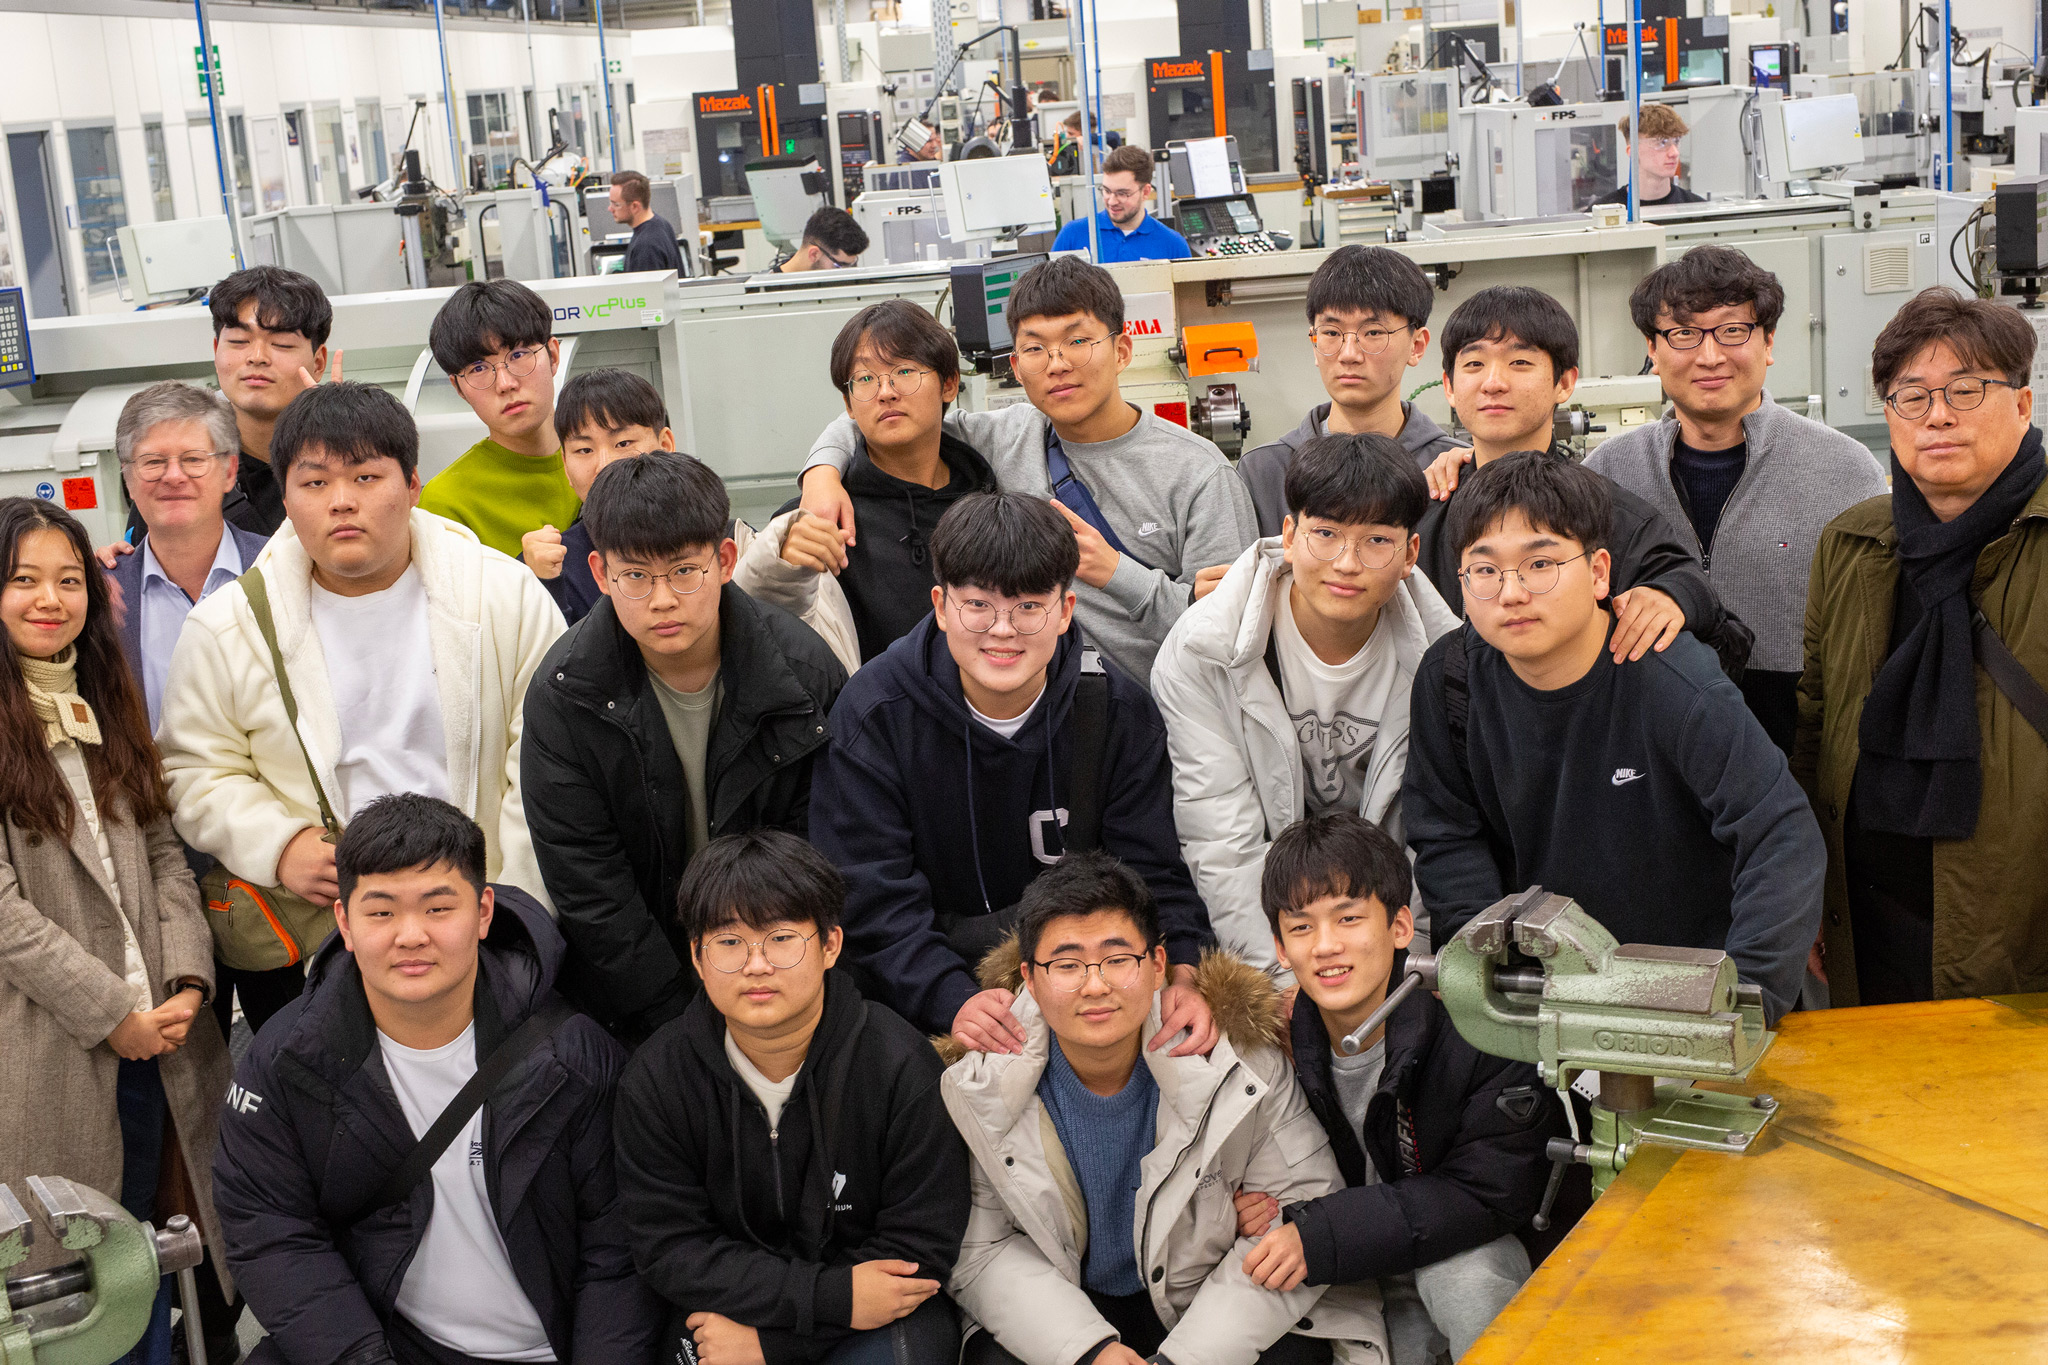 Auf dem Bild ist eine Schülergruppe aus Südkorea mit ihren Lehrkräften im Ausbildungszentrum von MAPAL zu sehen.